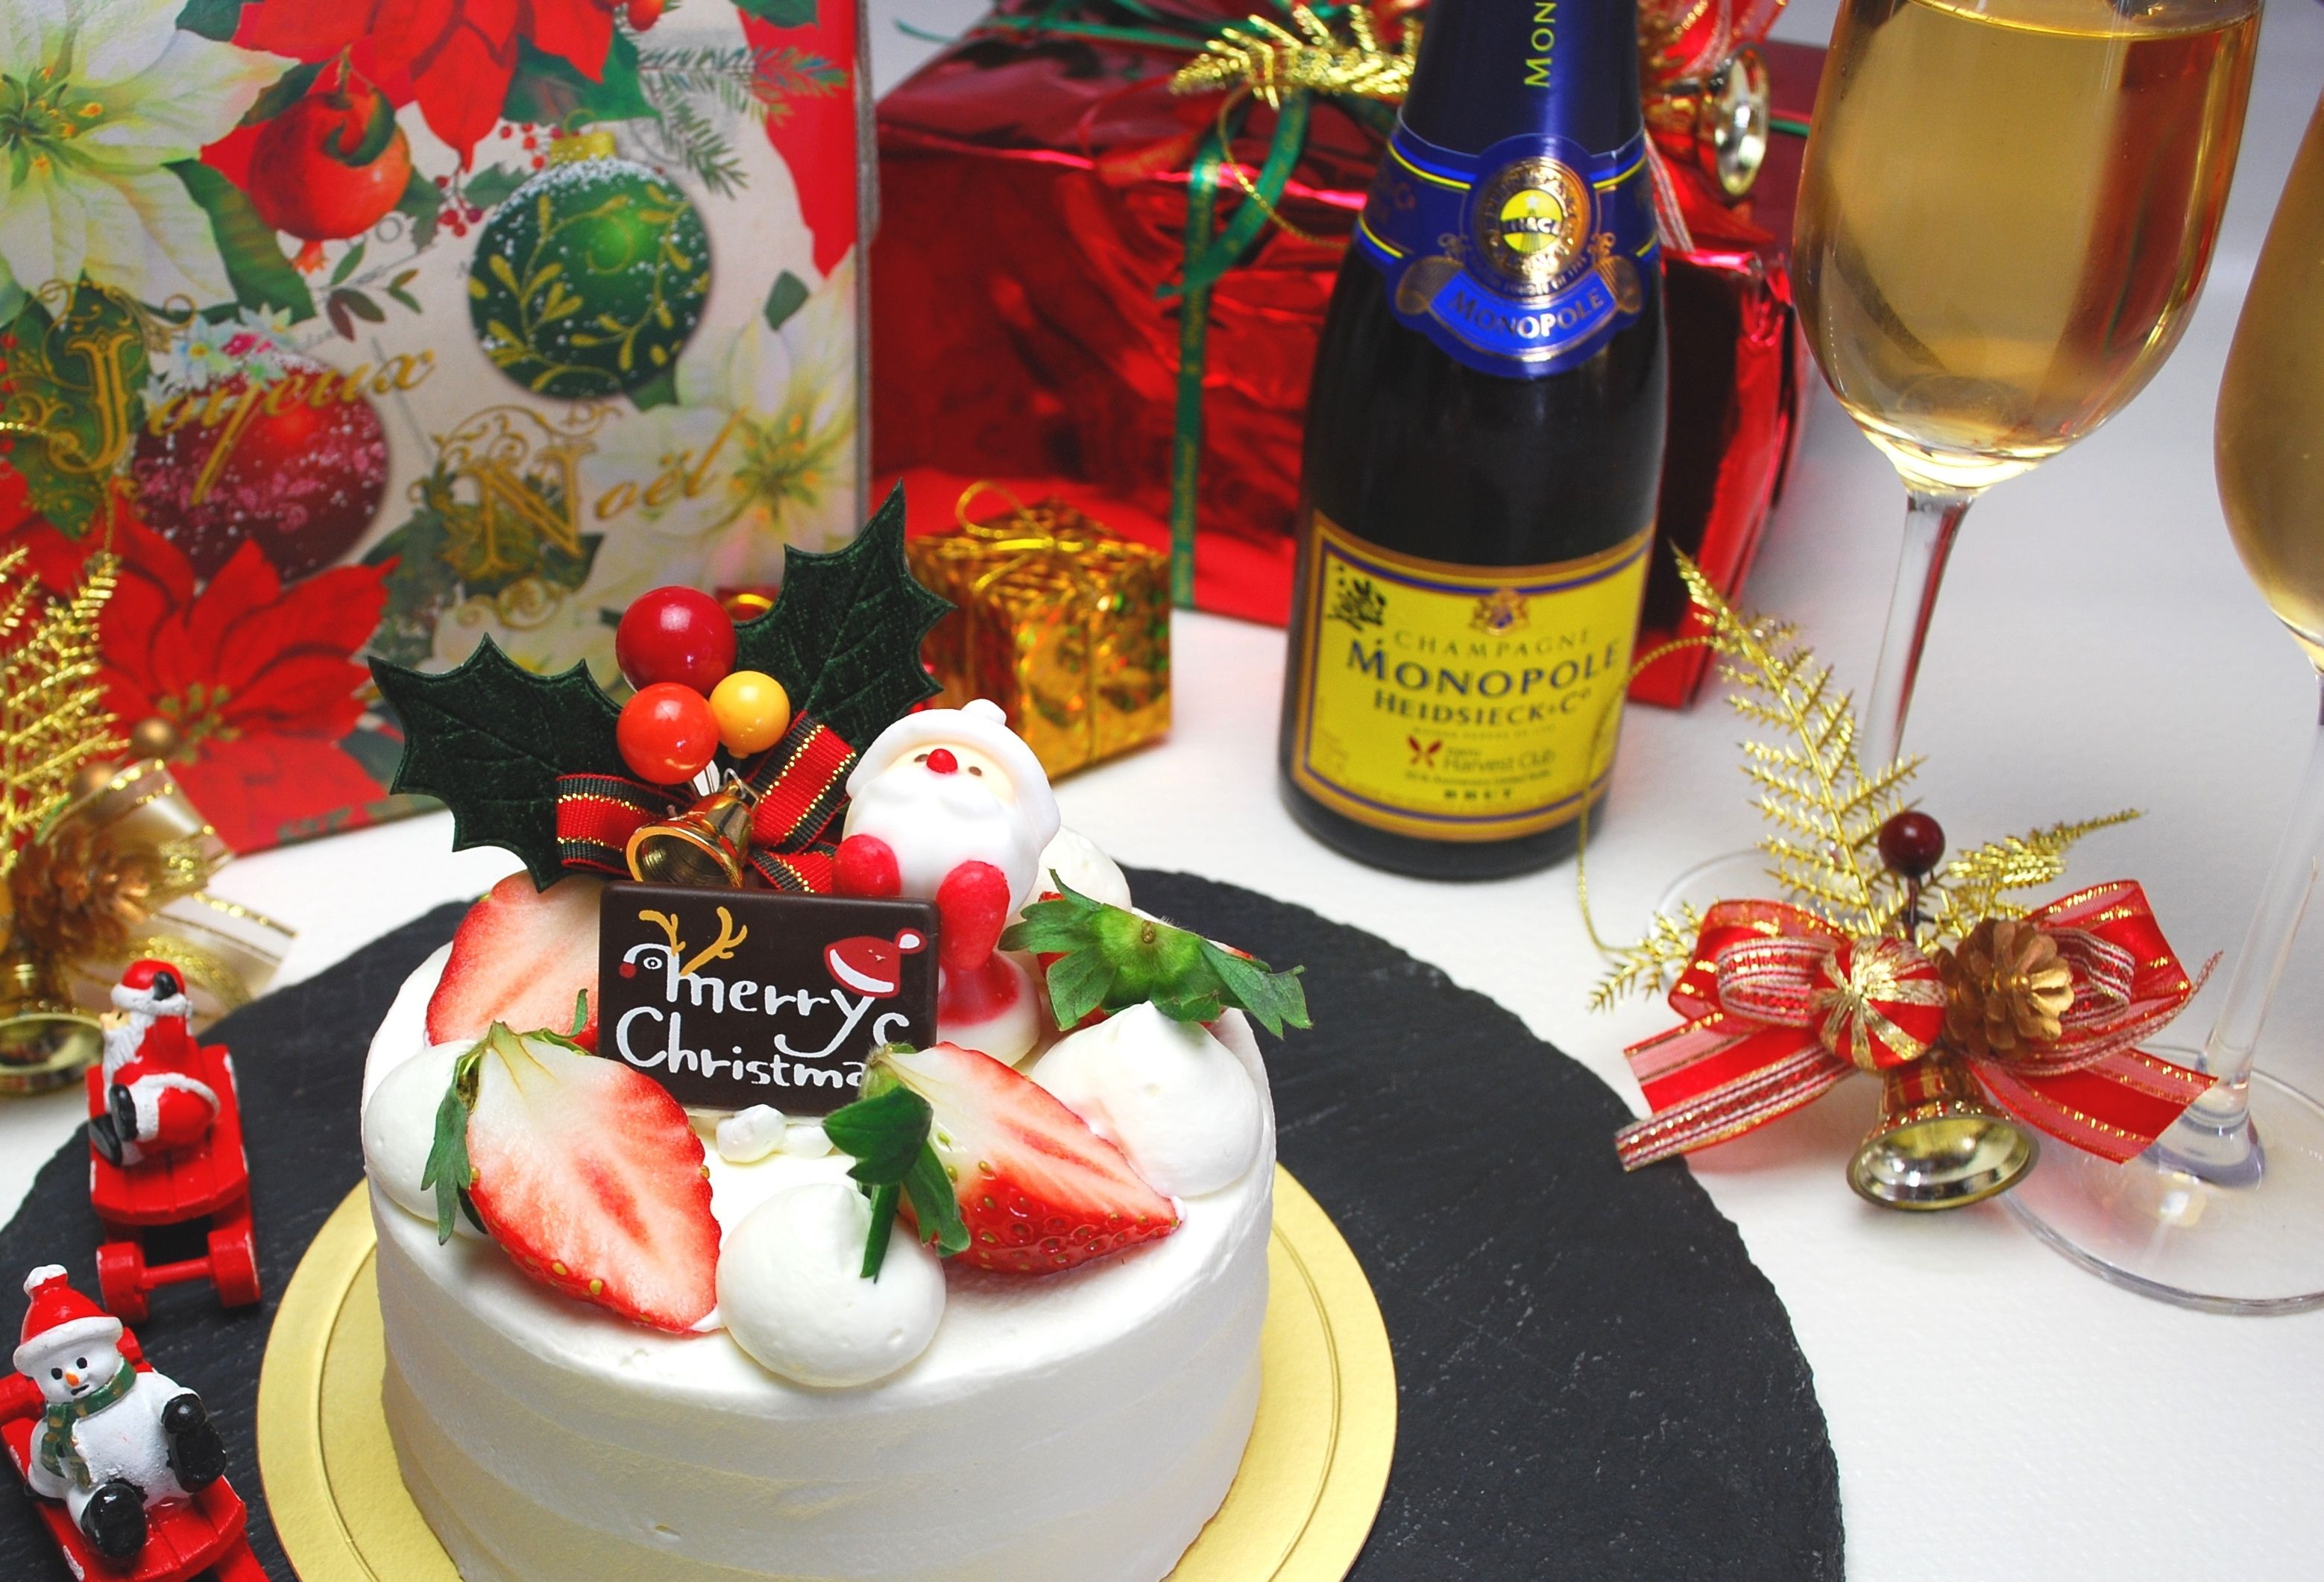 期間限定 カップル ご夫婦向け お部屋出しクリスマスケーキ シャンパン ホテルハーヴェスト那須のブログ 楽天ブログ